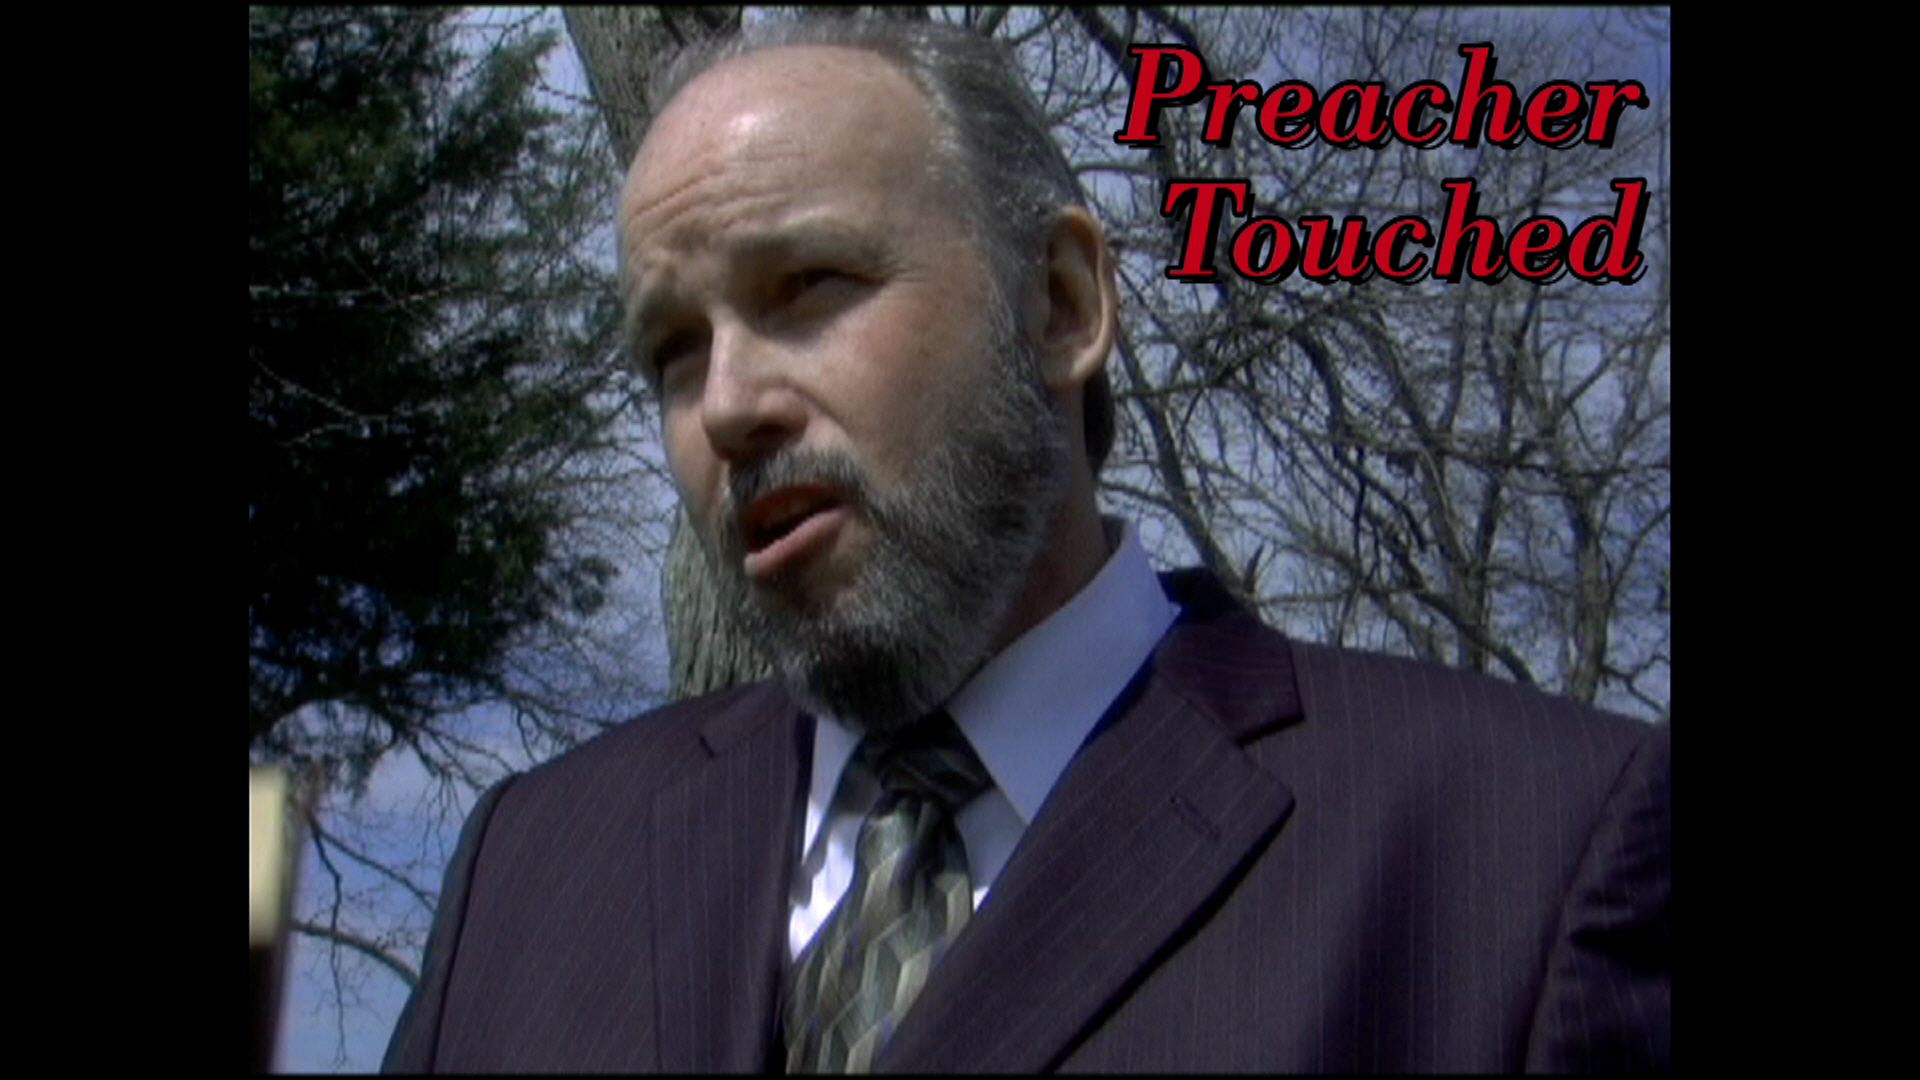 Short film, Touched Lead/Preacher